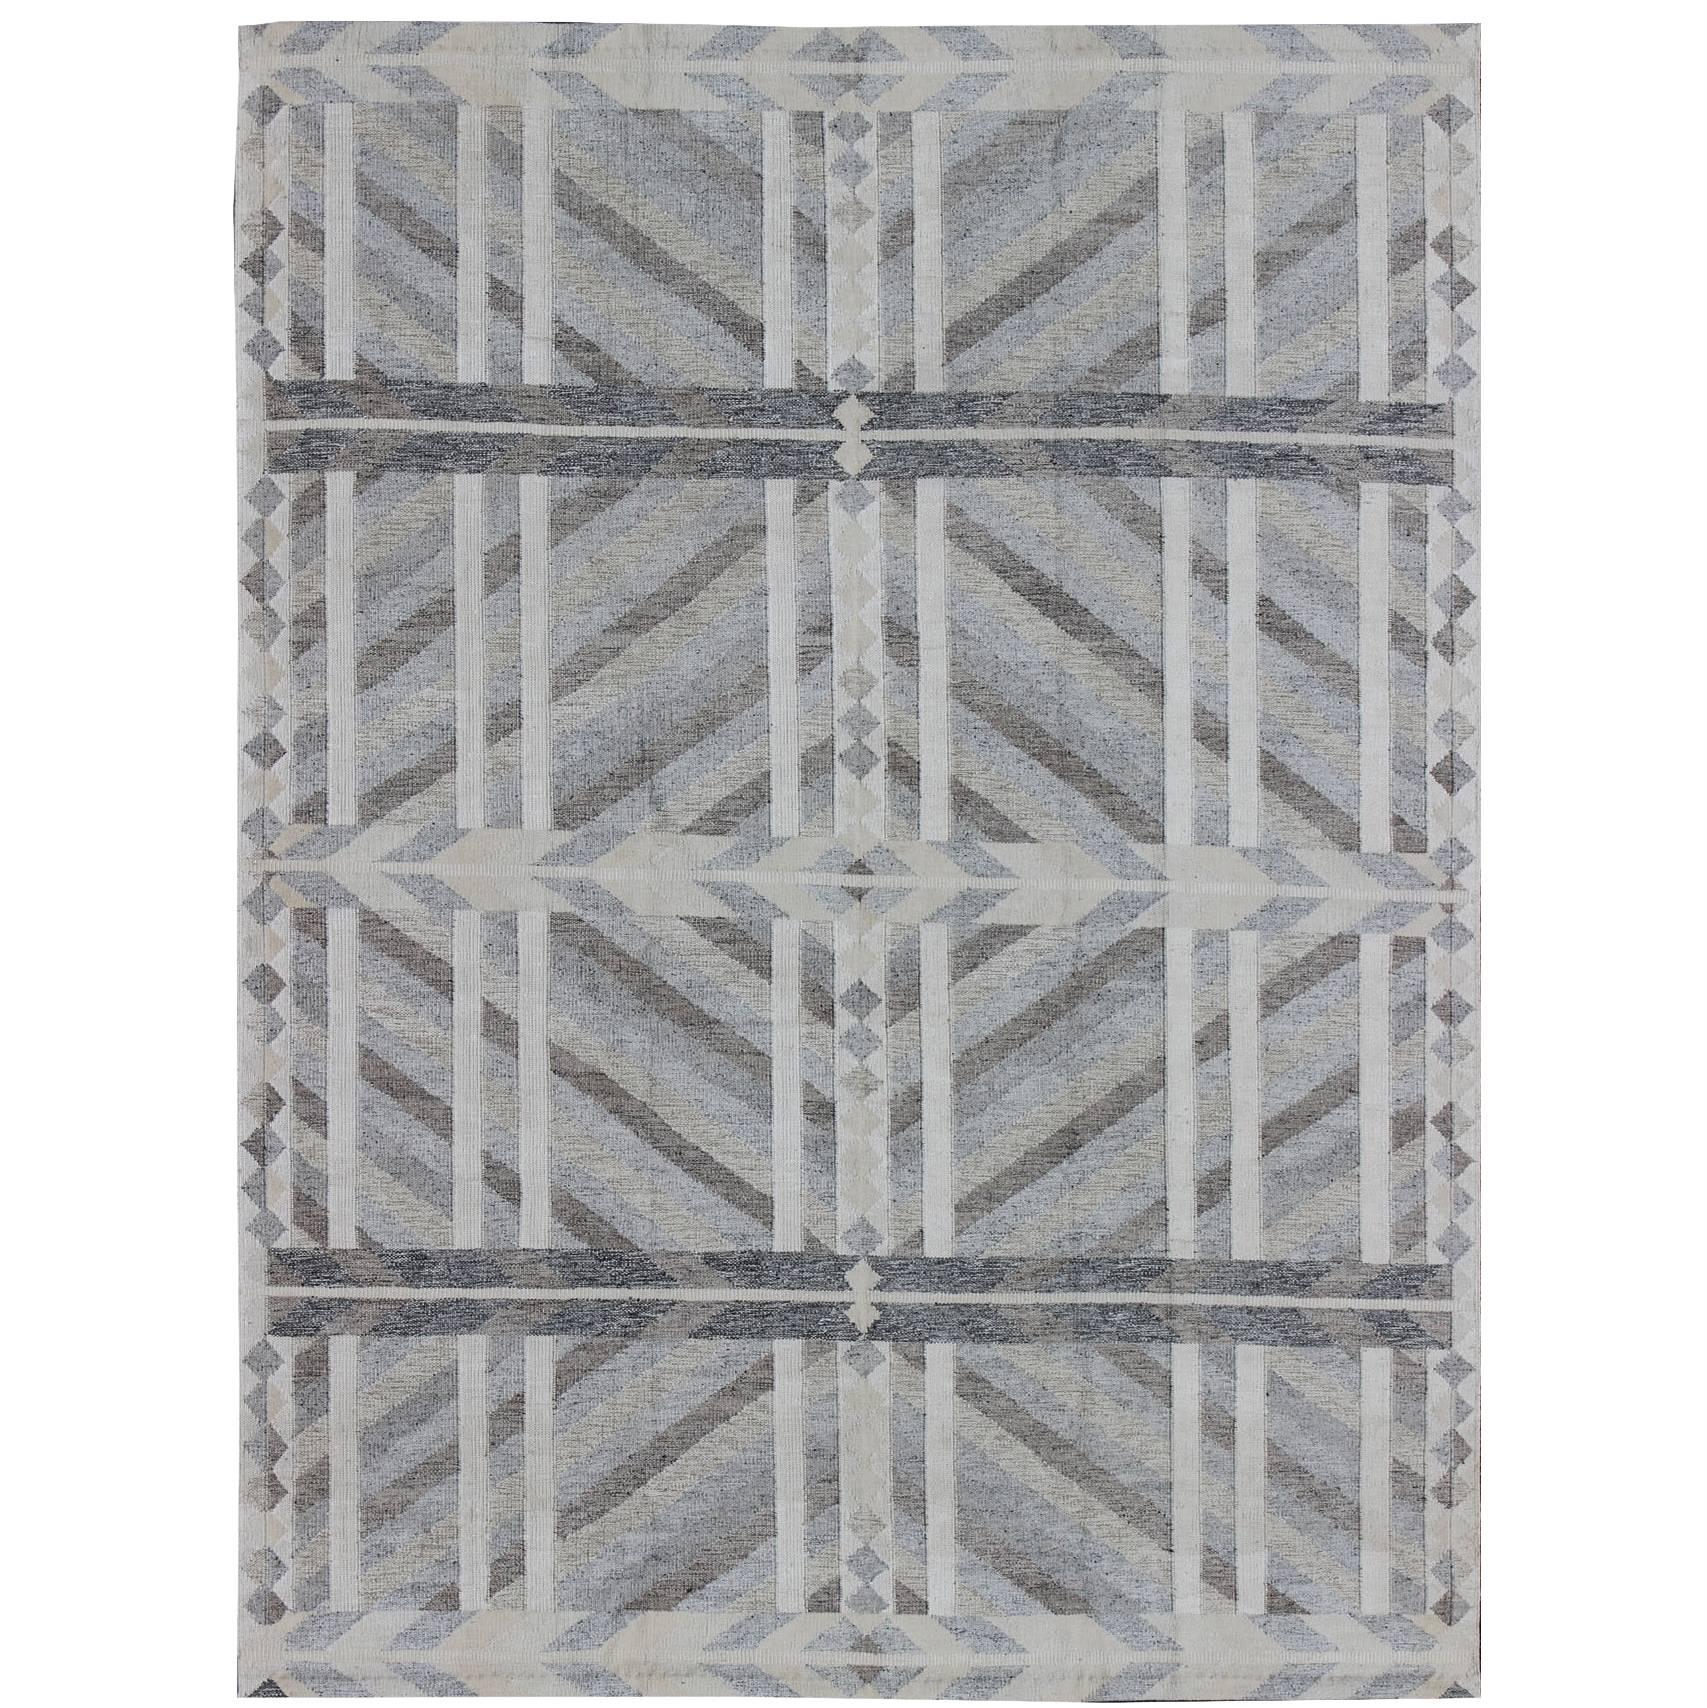 Großer moderner skandinavisch/schwedischer geometrischer Teppich in Grau und Pastellfarben